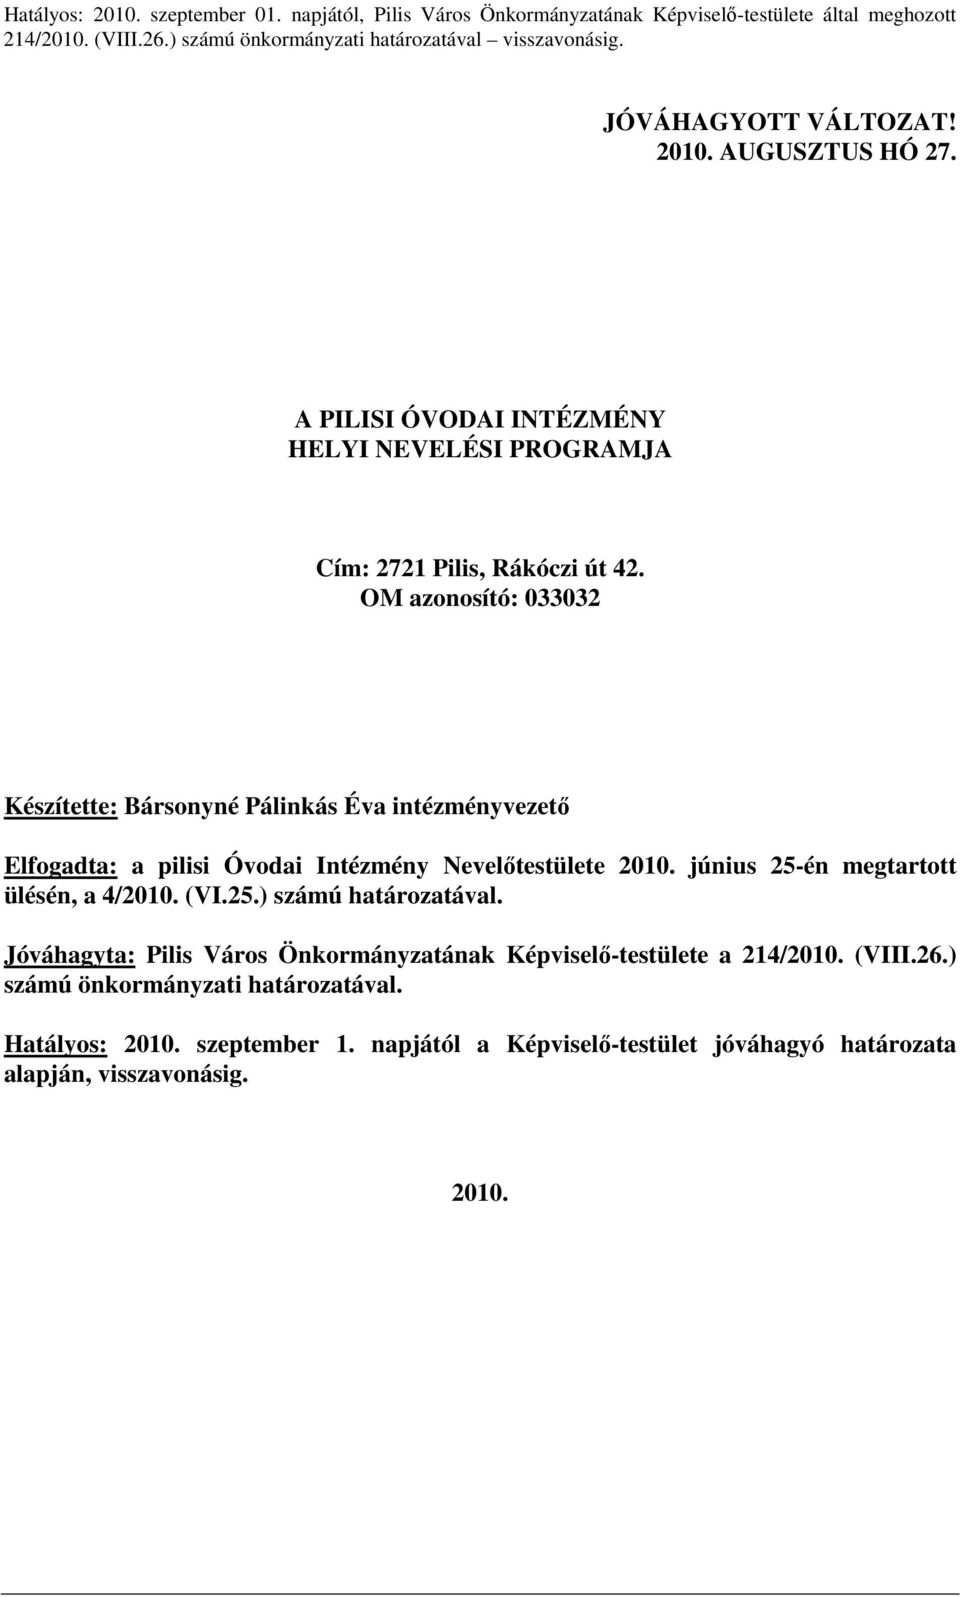 OM azonosító: 033032 Készítette: Bársonyné Pálinkás Éva intézményvezetı Elfogadta: a pilisi Óvodai Intézmény Nevelıtestülete 2010. június 25-én megtartott ülésén, a 4/2010. (VI.25.) számú határozatával.